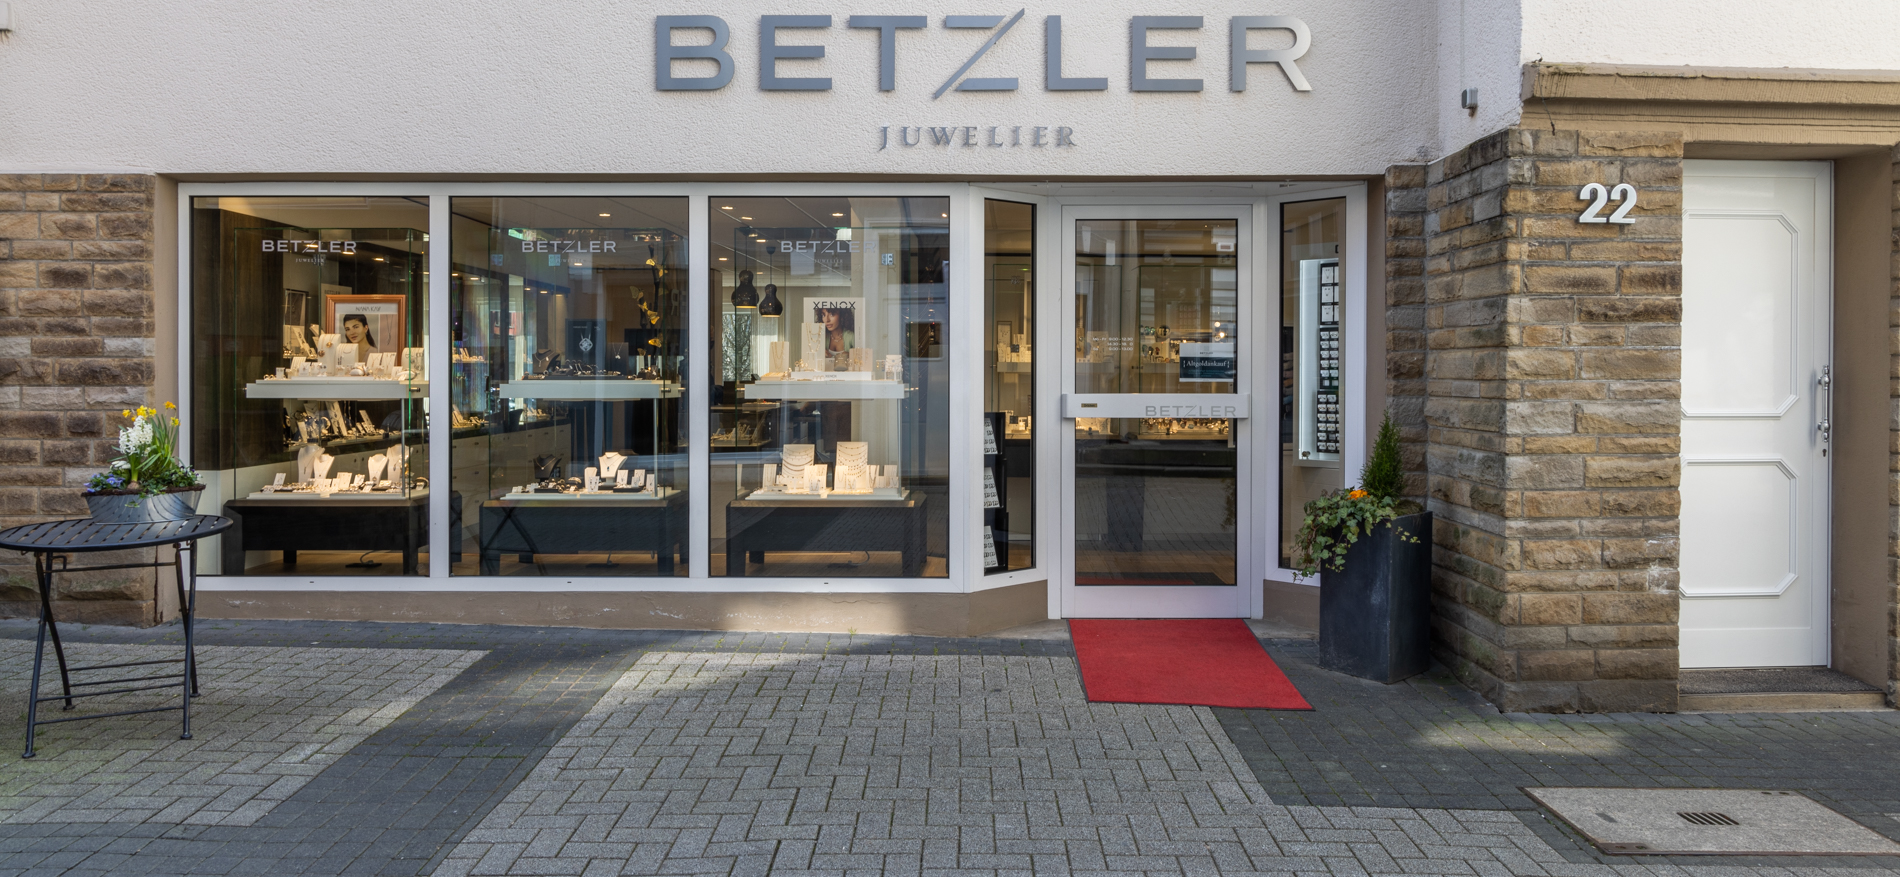 Jeweler Betzler | Altena (DE) - 